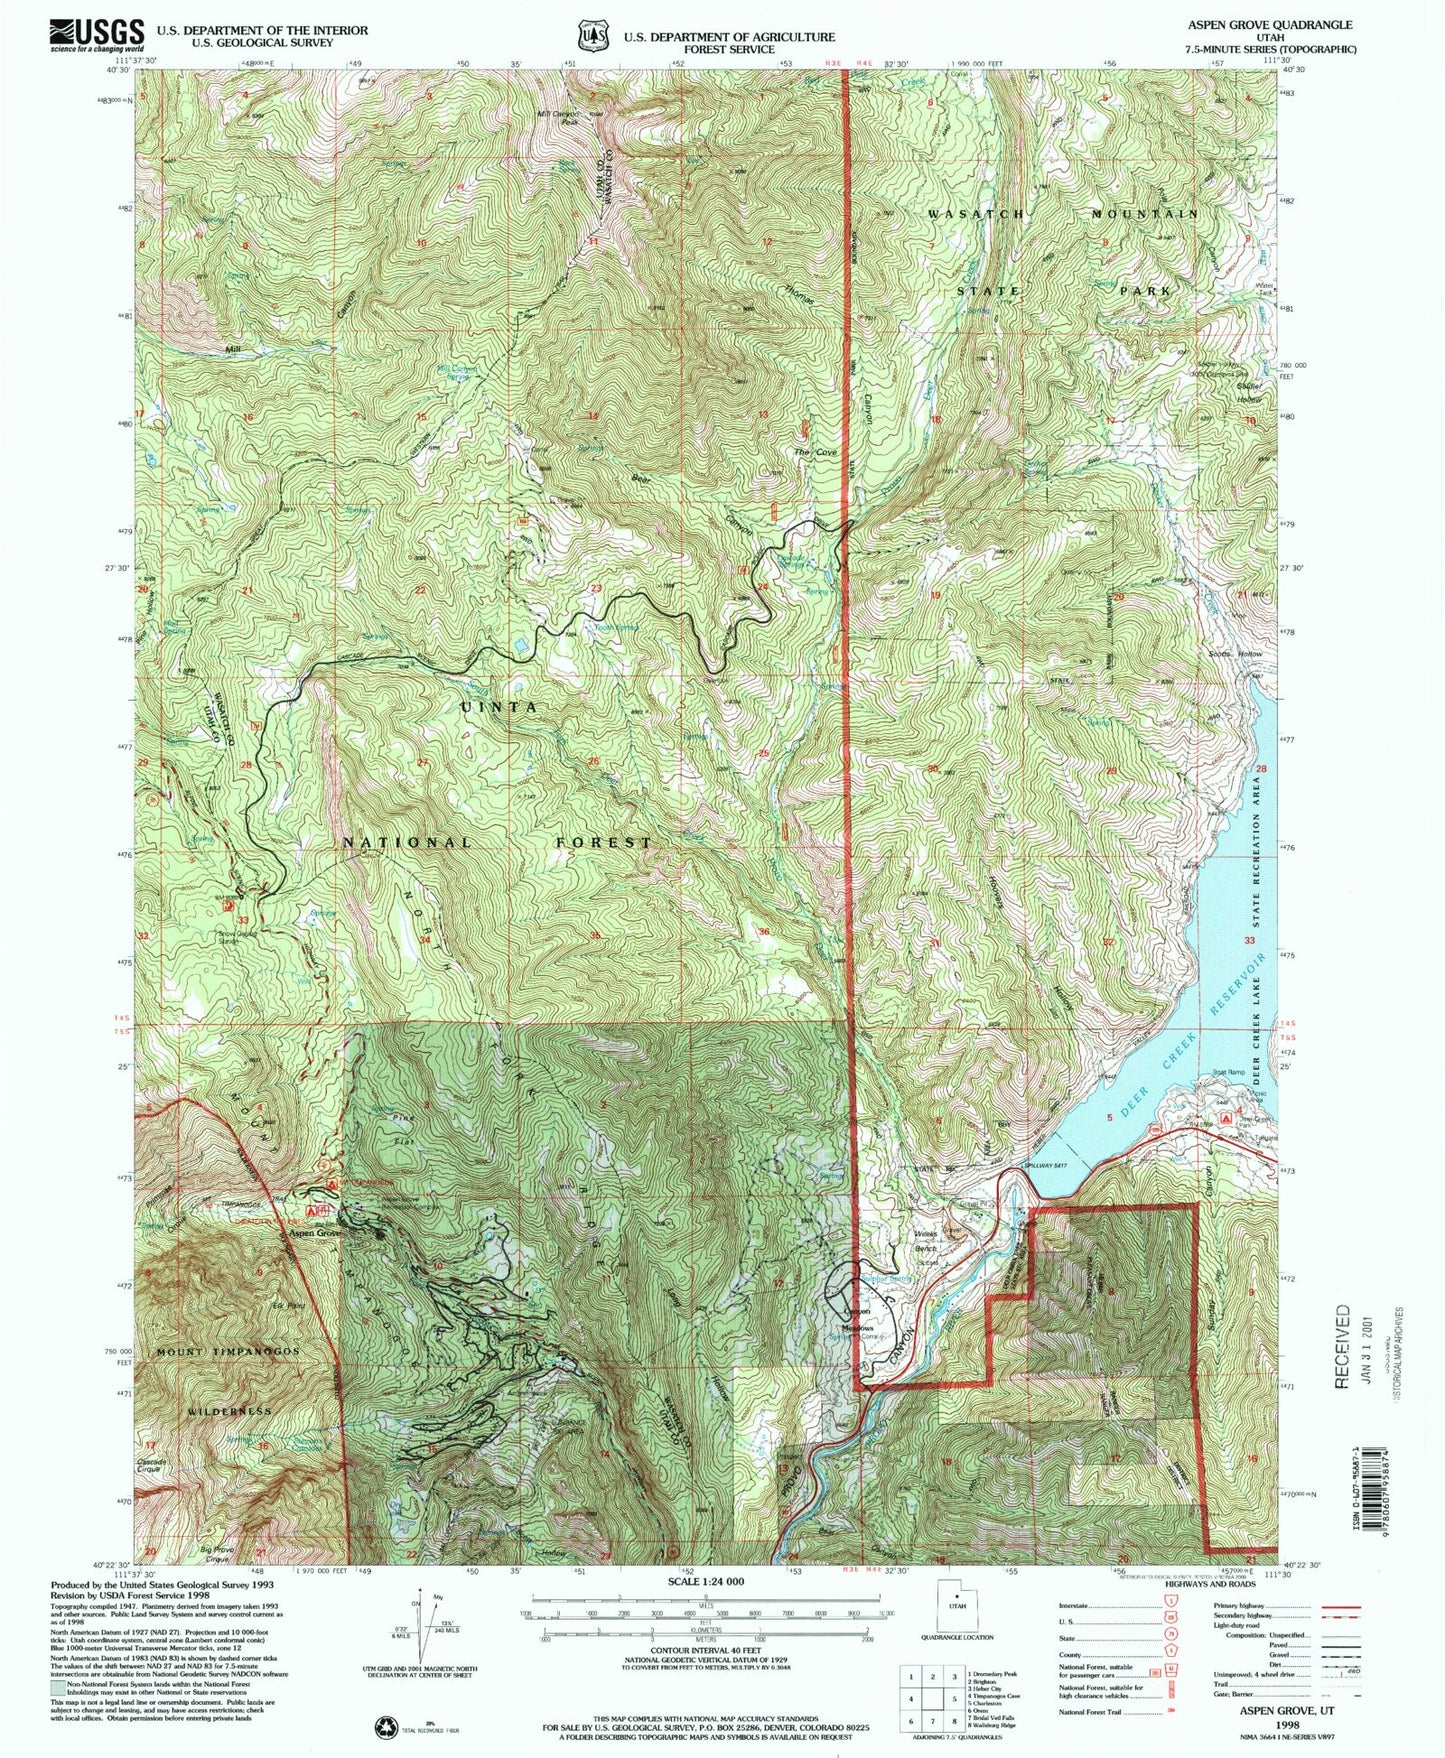 Classic USGS Aspen Grove Utah 7.5'x7.5' Topo Map Image